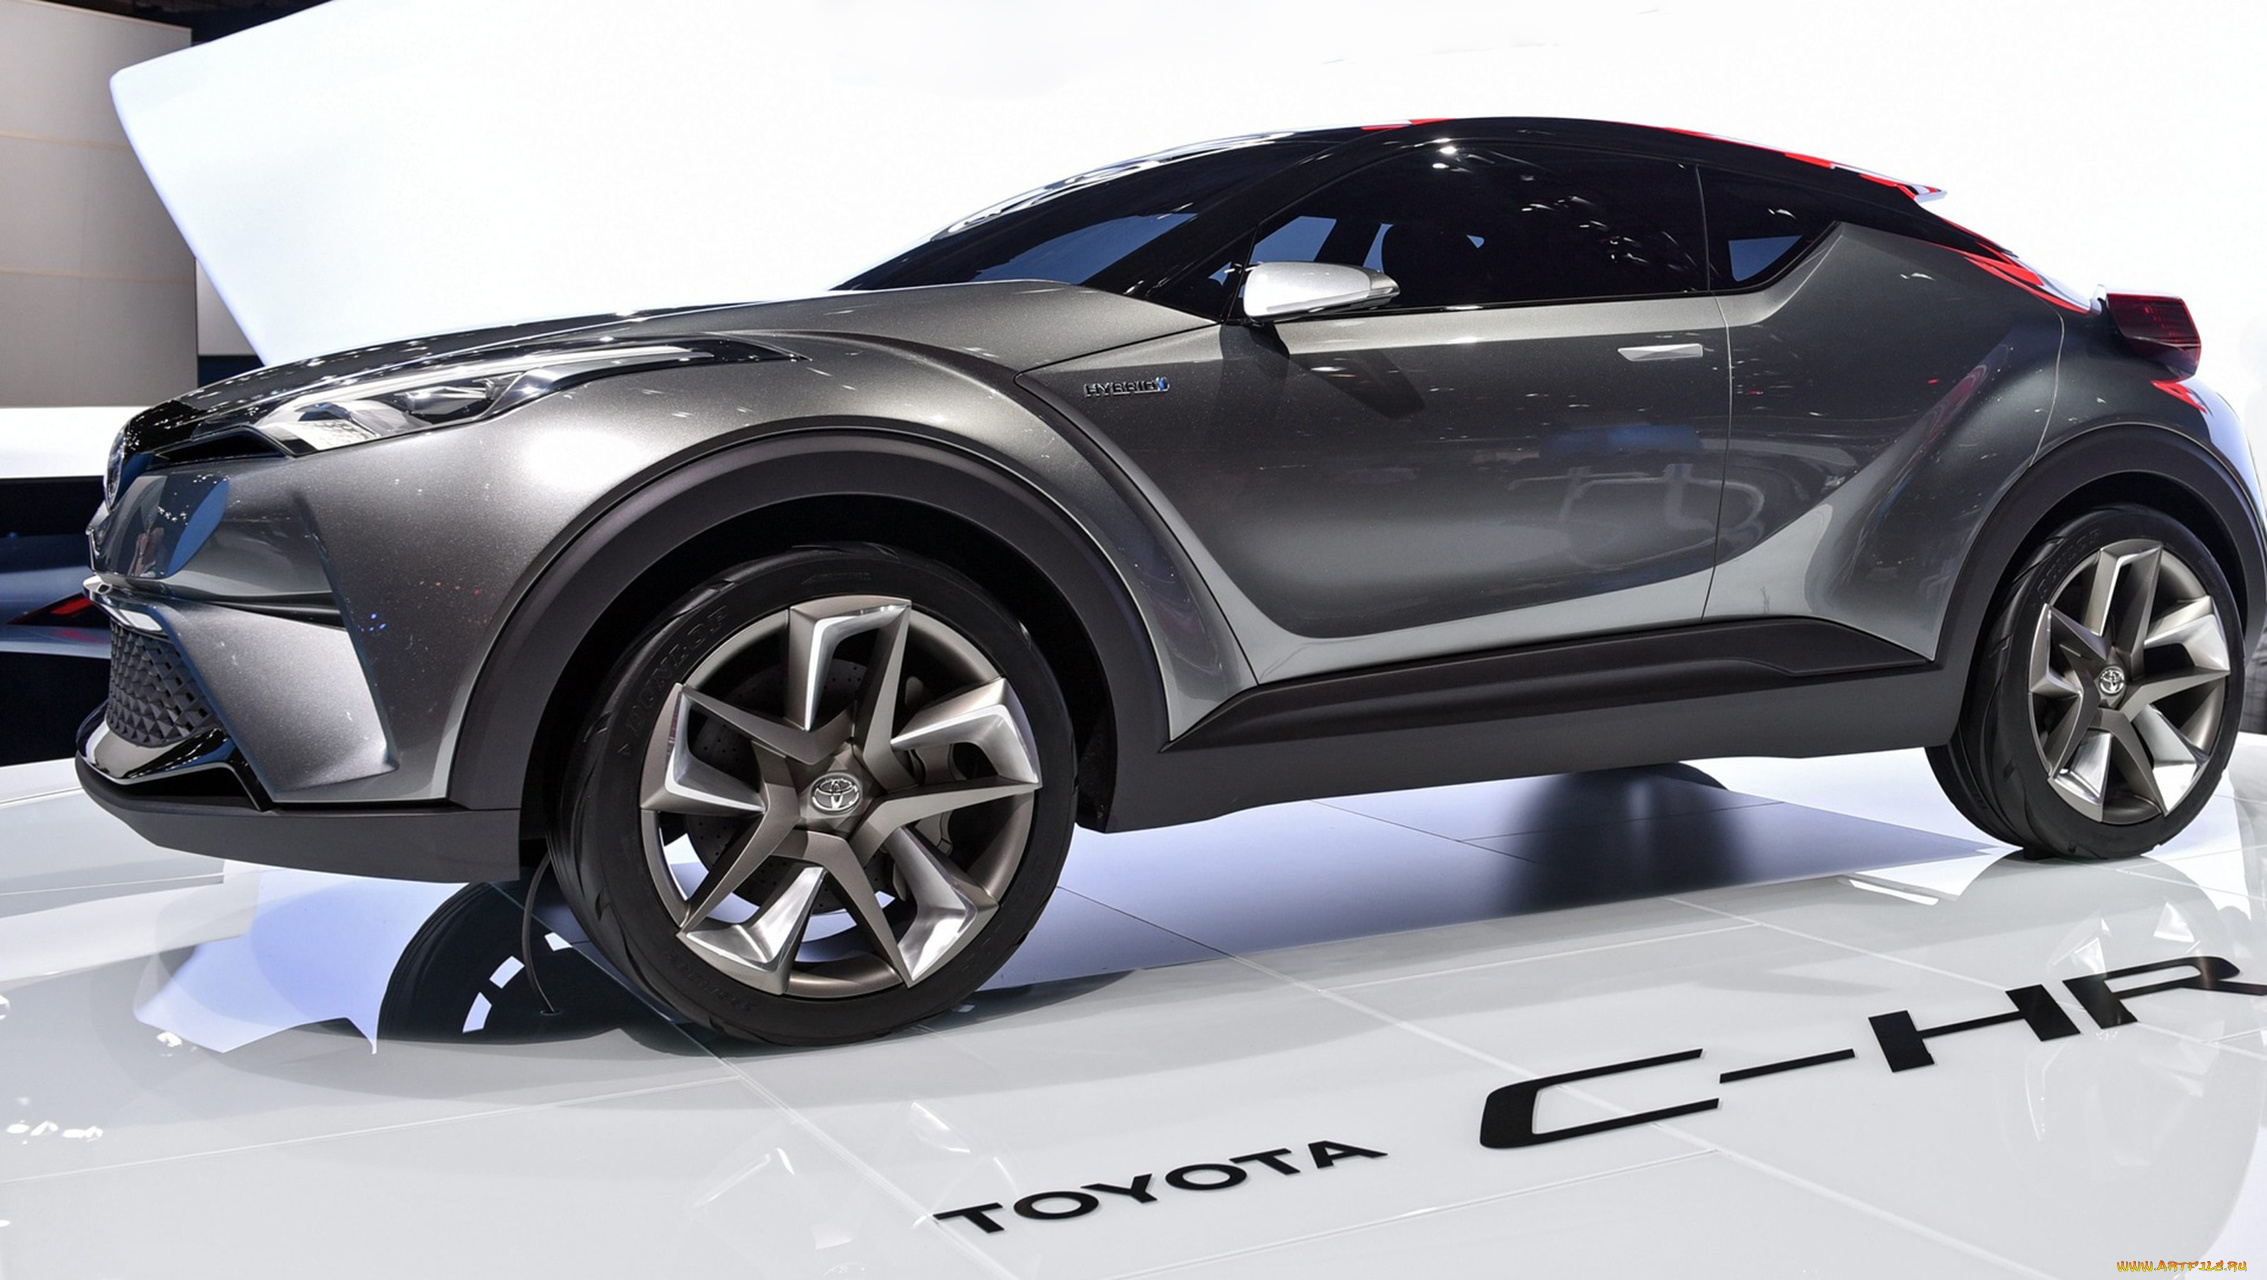 toyota, c-hr, concept, 2015, car, crossover, автомобили, выставки, и, уличные, фото, c-hr, 2015, concept, toyota, crossover, car